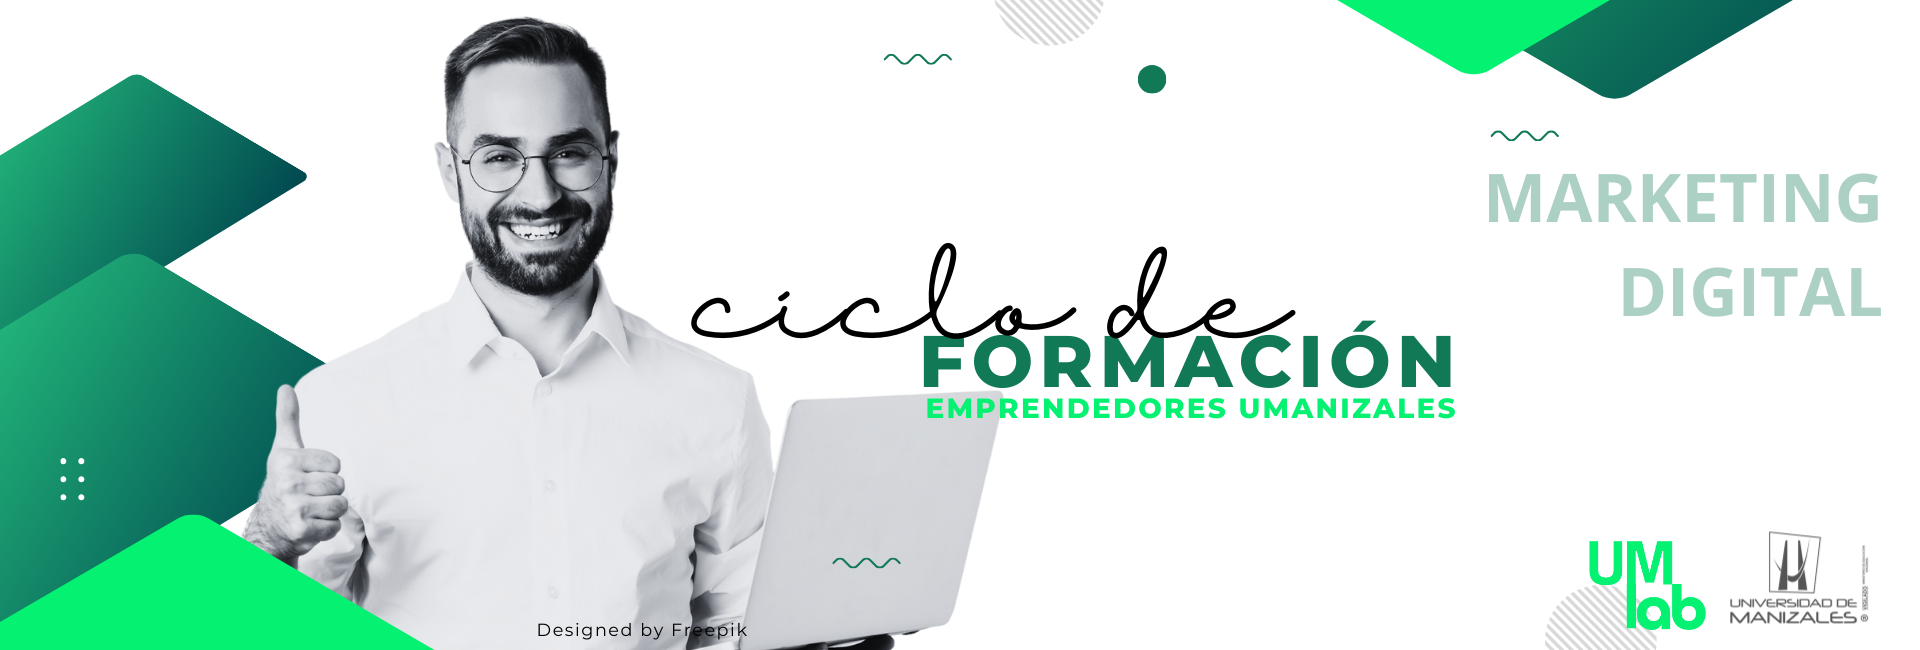 Ciclo de formación emprendedores UManizales. Módulo Marketing Digital